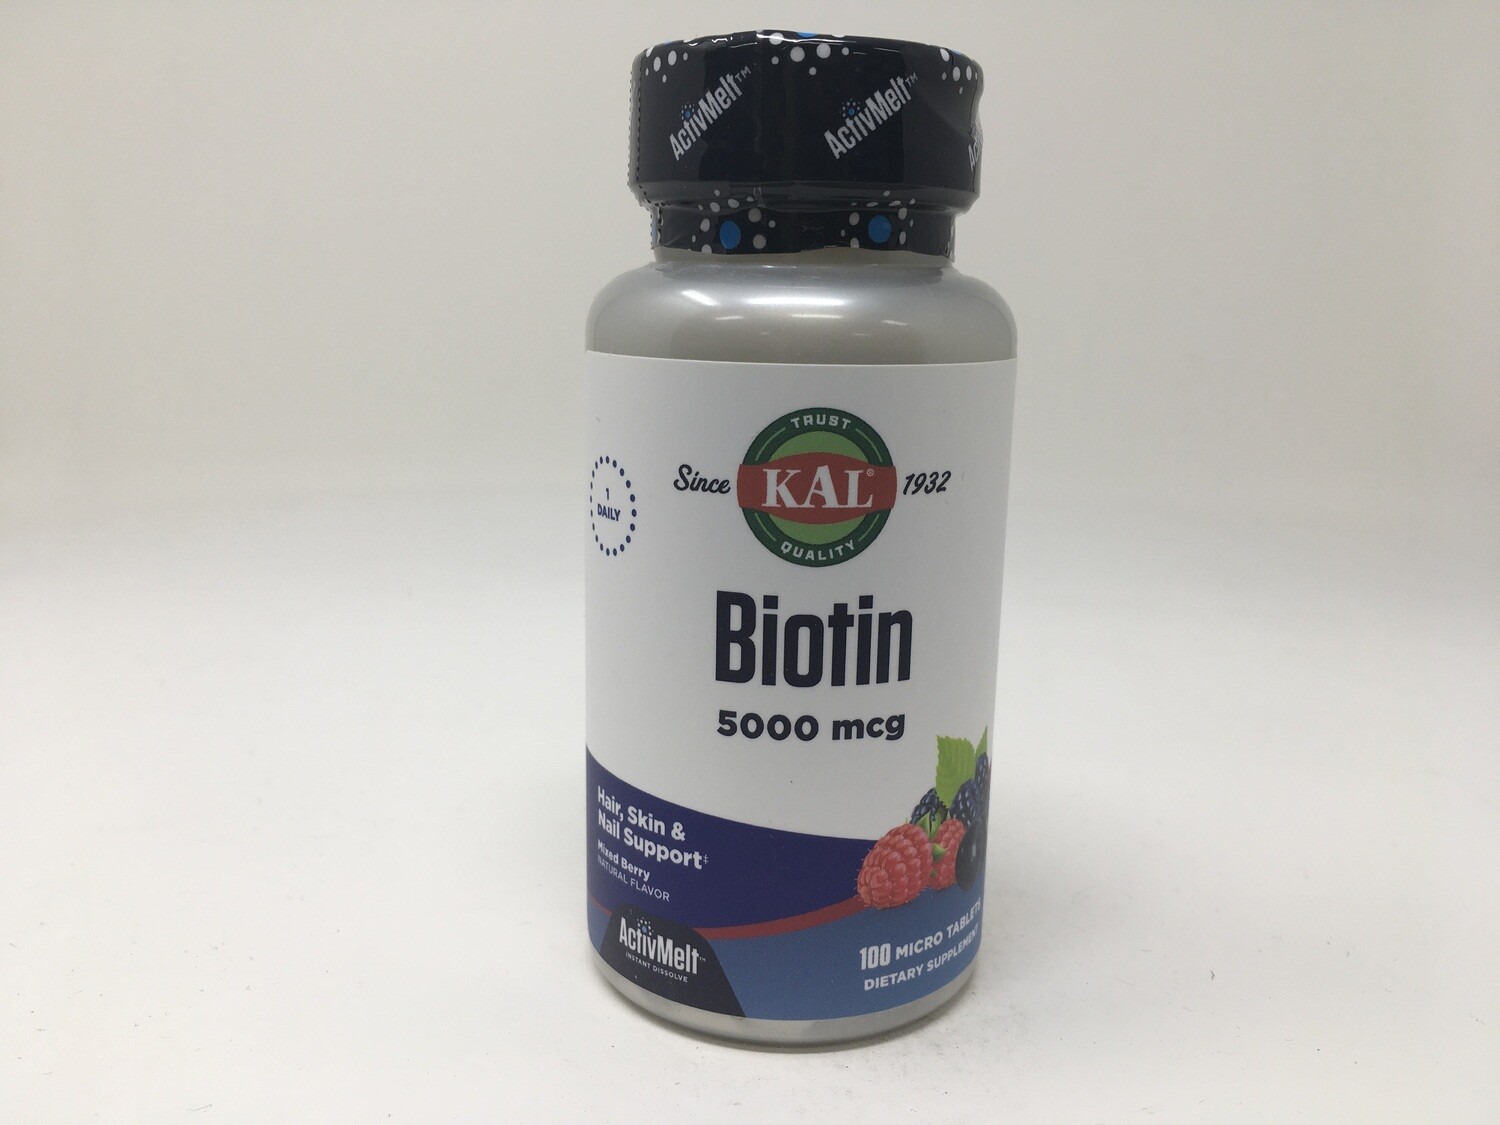 Biotin 5000mcg 100 micro tab. KAL